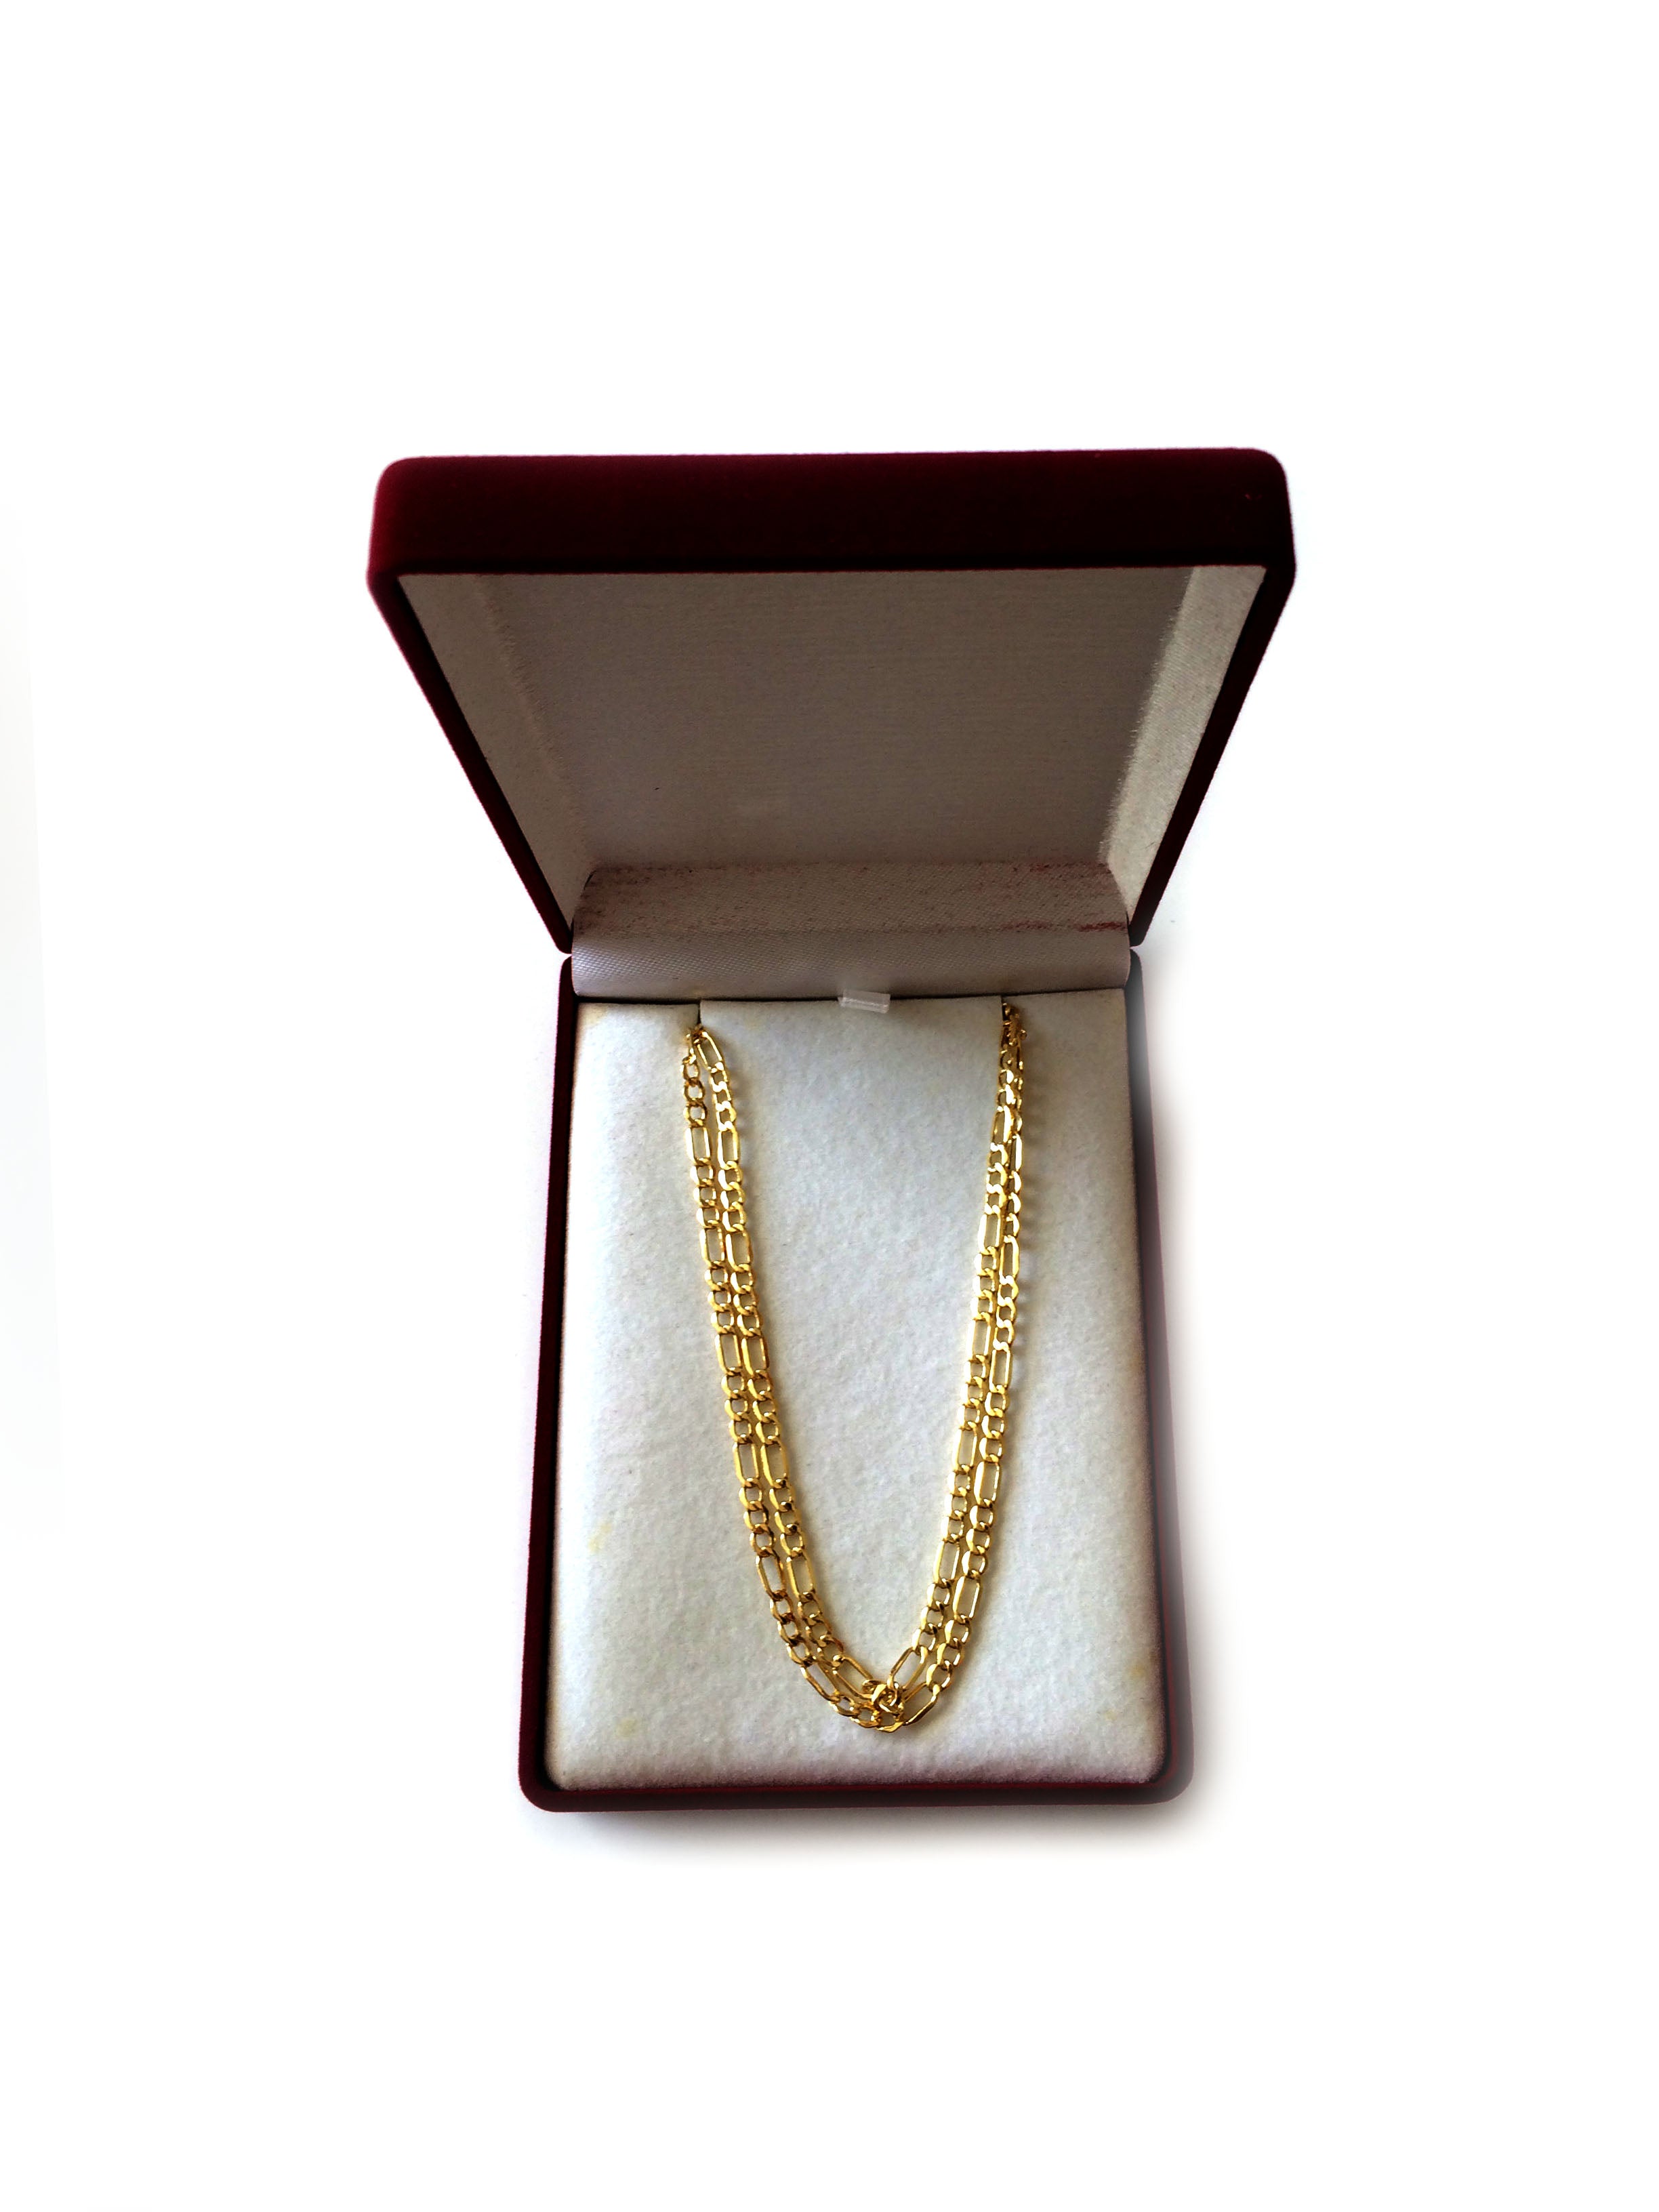 Collana a catena Figaro cava in oro giallo 14k, gioielleria raffinata da 3,5 mm per uomo e donna